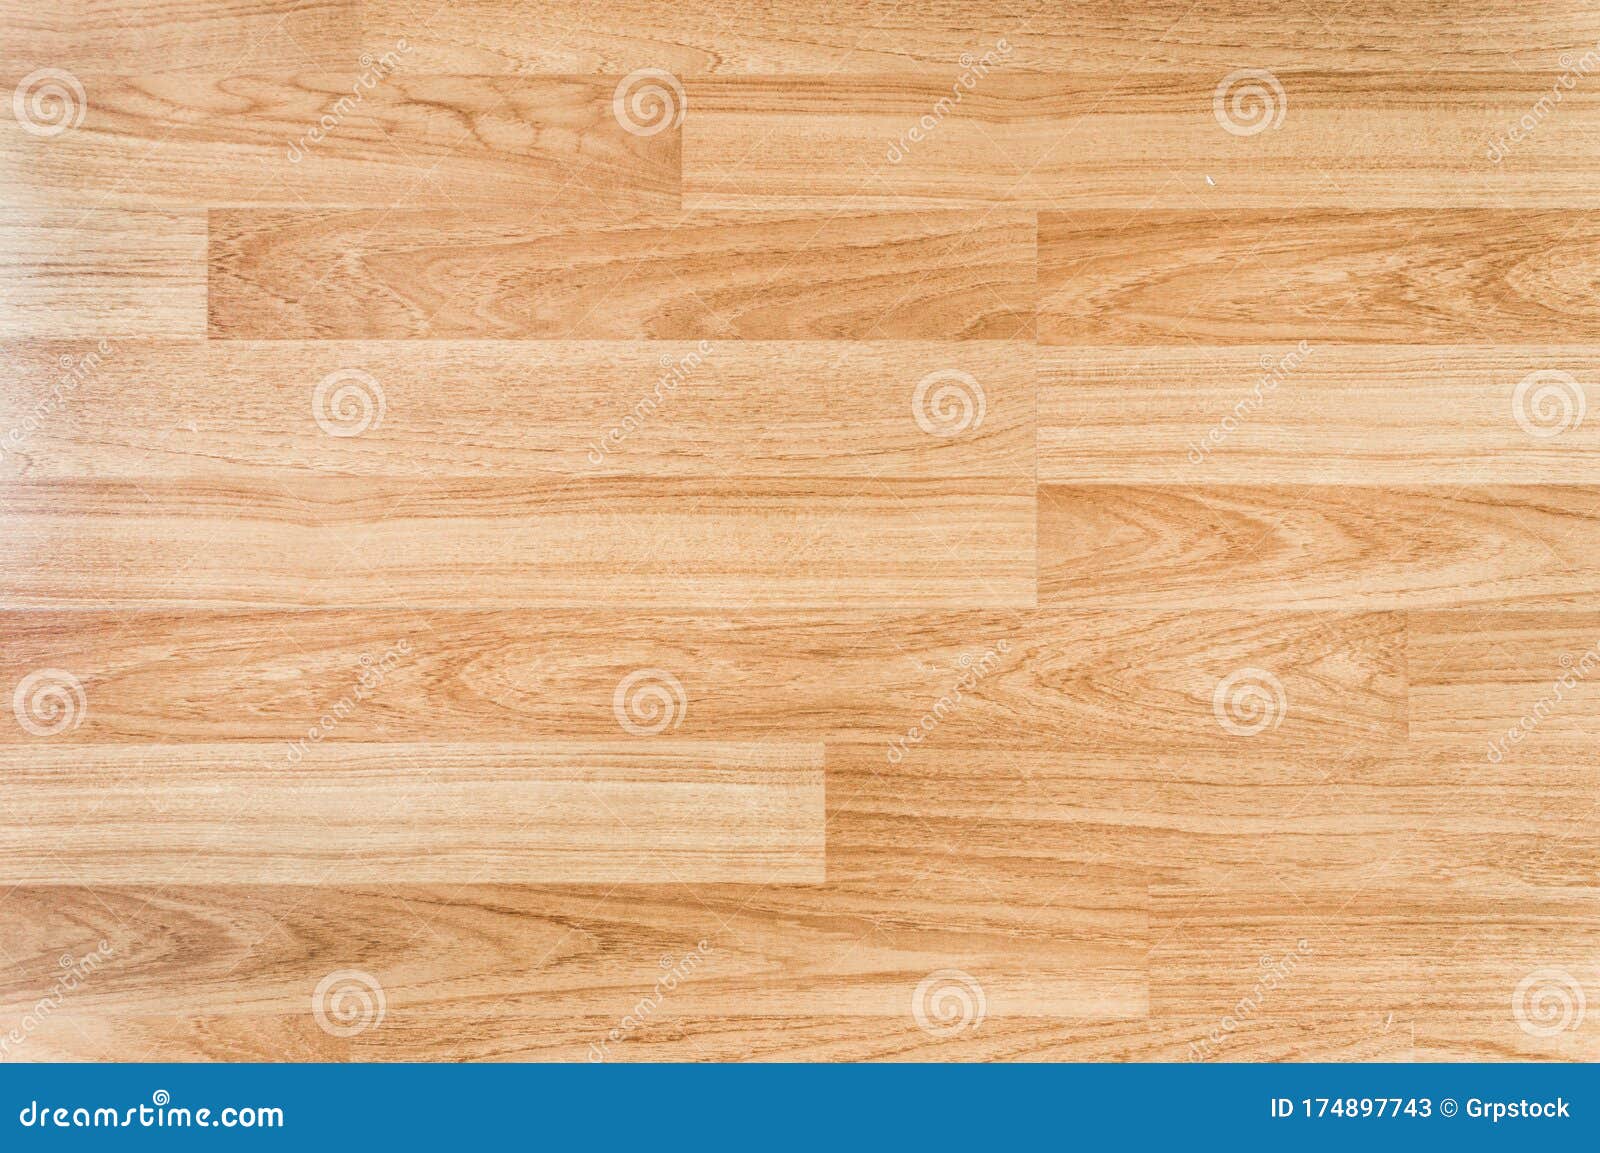 Trải nghiệm cảm giác êm ái khi chân bạn đặt lên sàn gỗ sáng mịn. Không chỉ đẹp mắt, sàn gỗ sản xuất chất lượng cao còn mang đến cho không gian sống của bạn cảm giác ấm áp và sang trọng. Hãy truy cập hình ảnh để đắm chìm trong vẻ đẹp của mẫu sàn gỗ sáng mịn này.